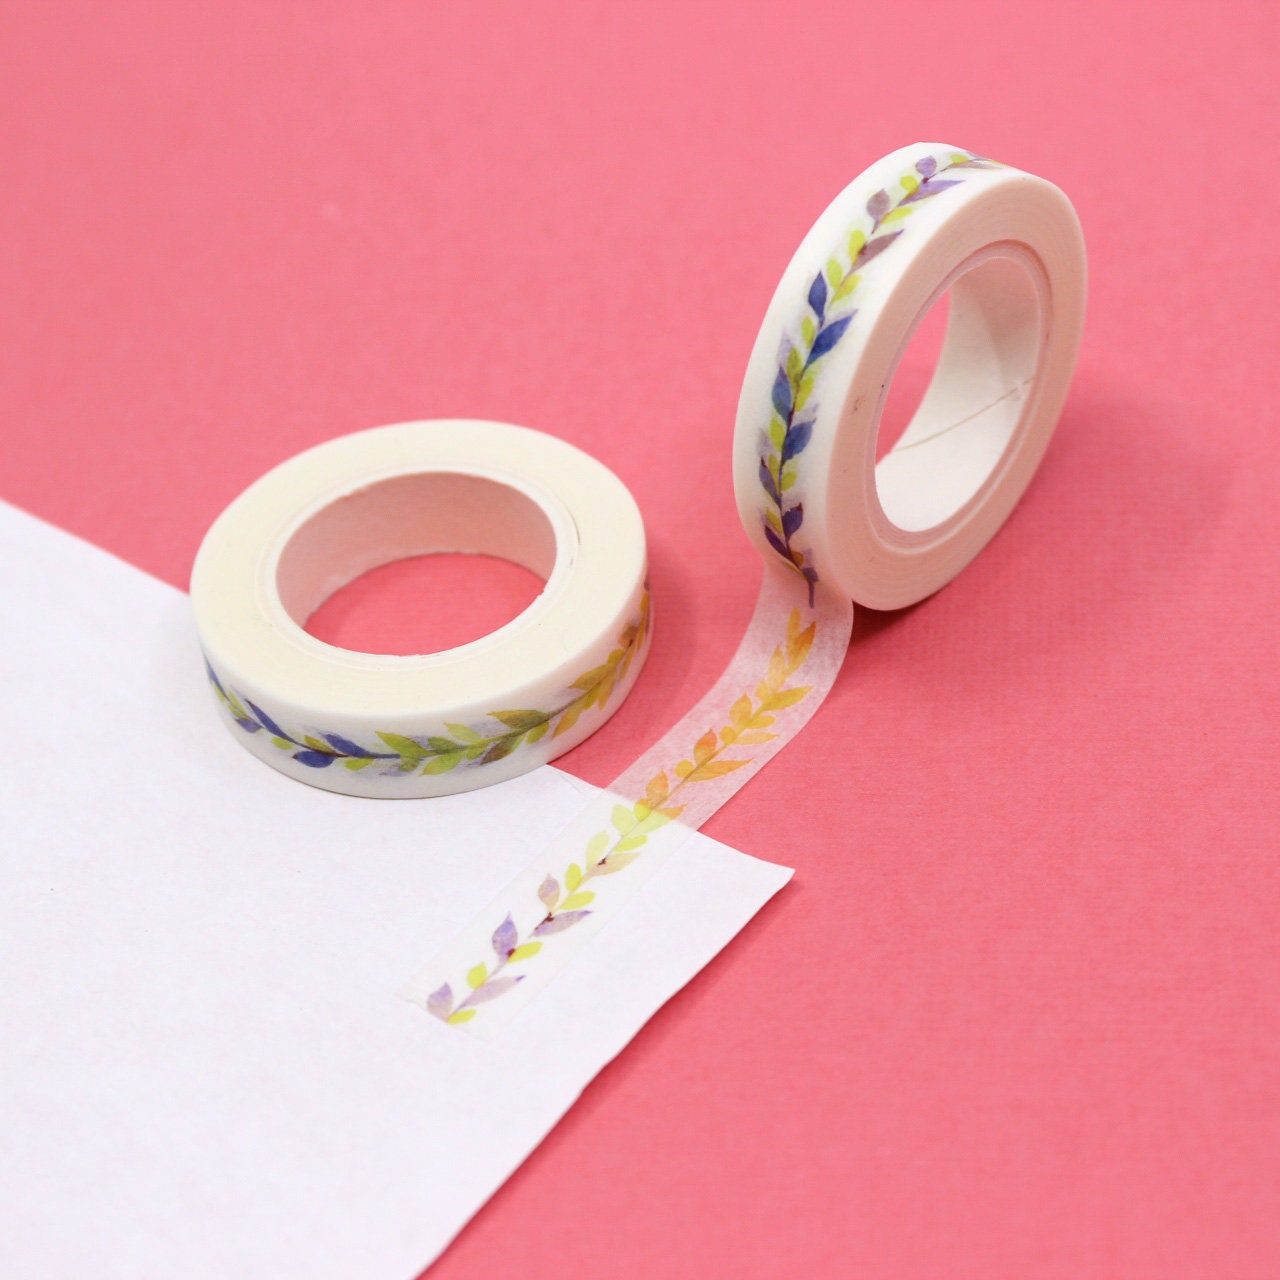 12pcs Washi Tape Set Japanese Decorative Pink Washi Masking Tape For  Scrapbooking Journal Gift Wrapping Diy Decor Craft Supplies